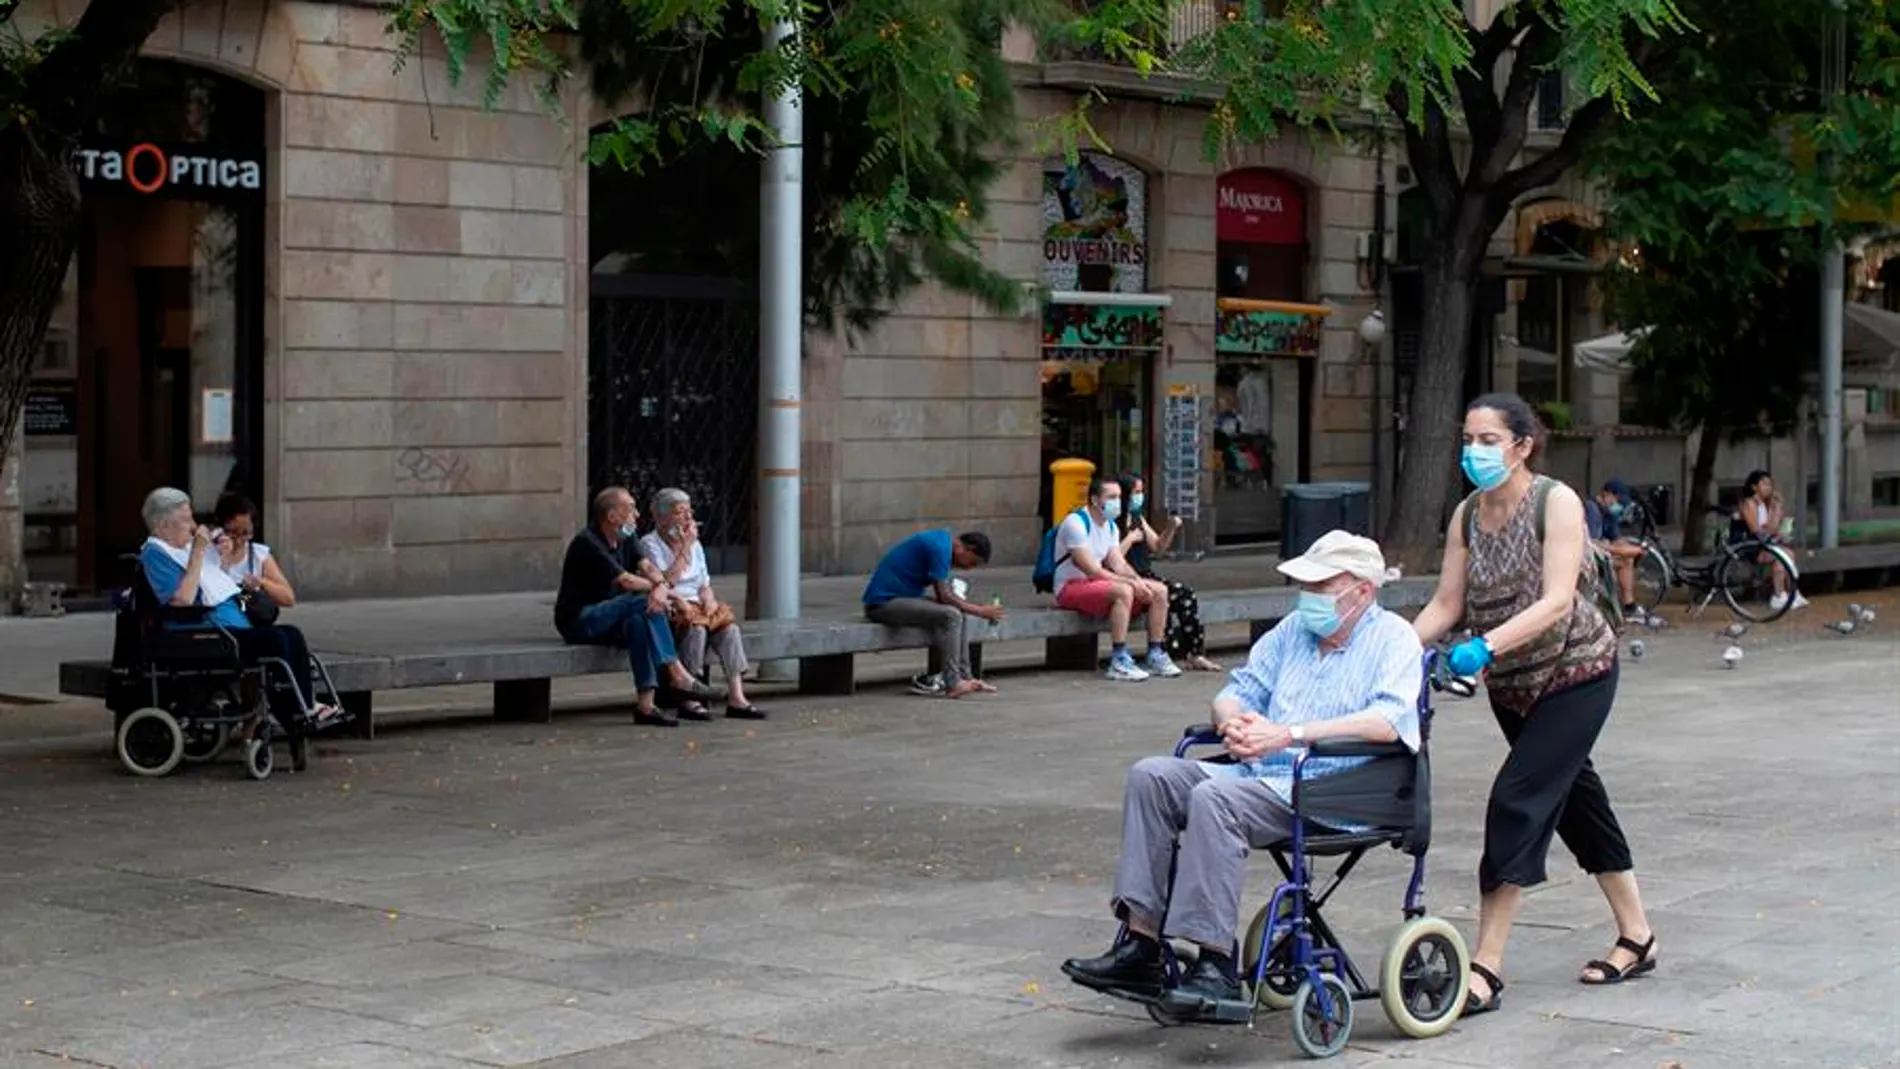 Una mujer empuja la silla de un señor mayor en el centro de Barcelona.